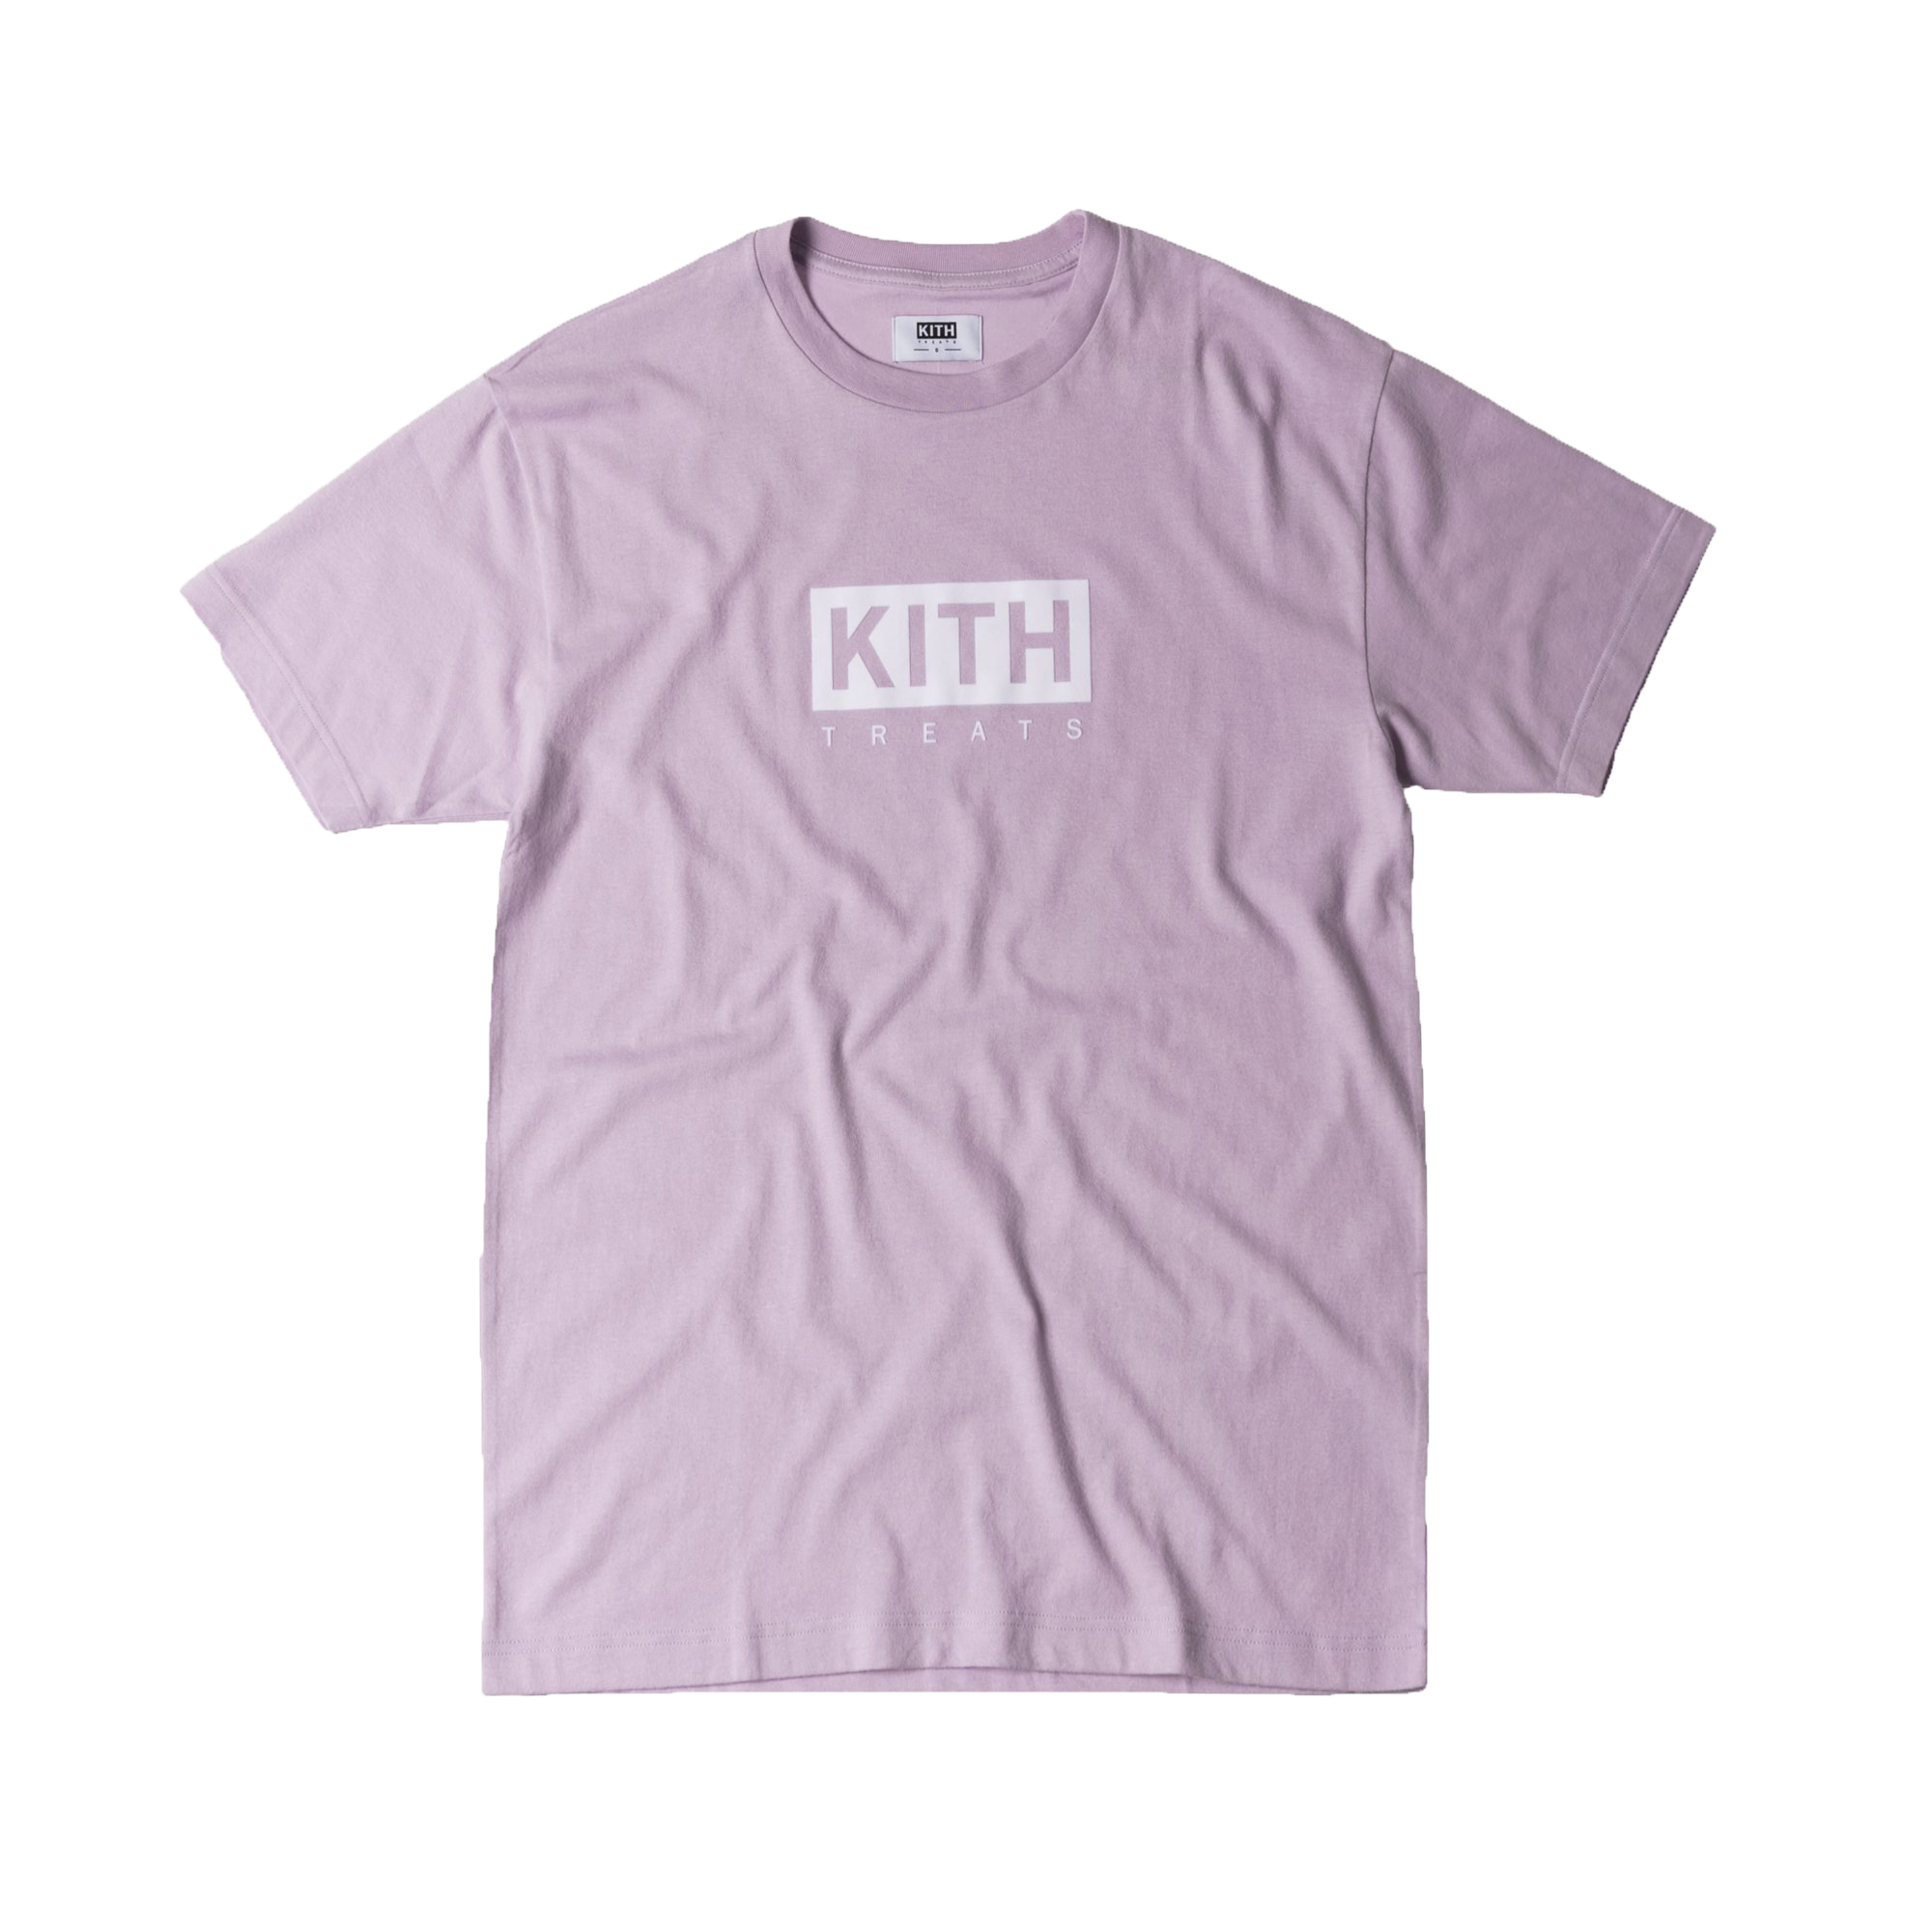 Kith Treats Tee Light Purple Men's - SS17 - US